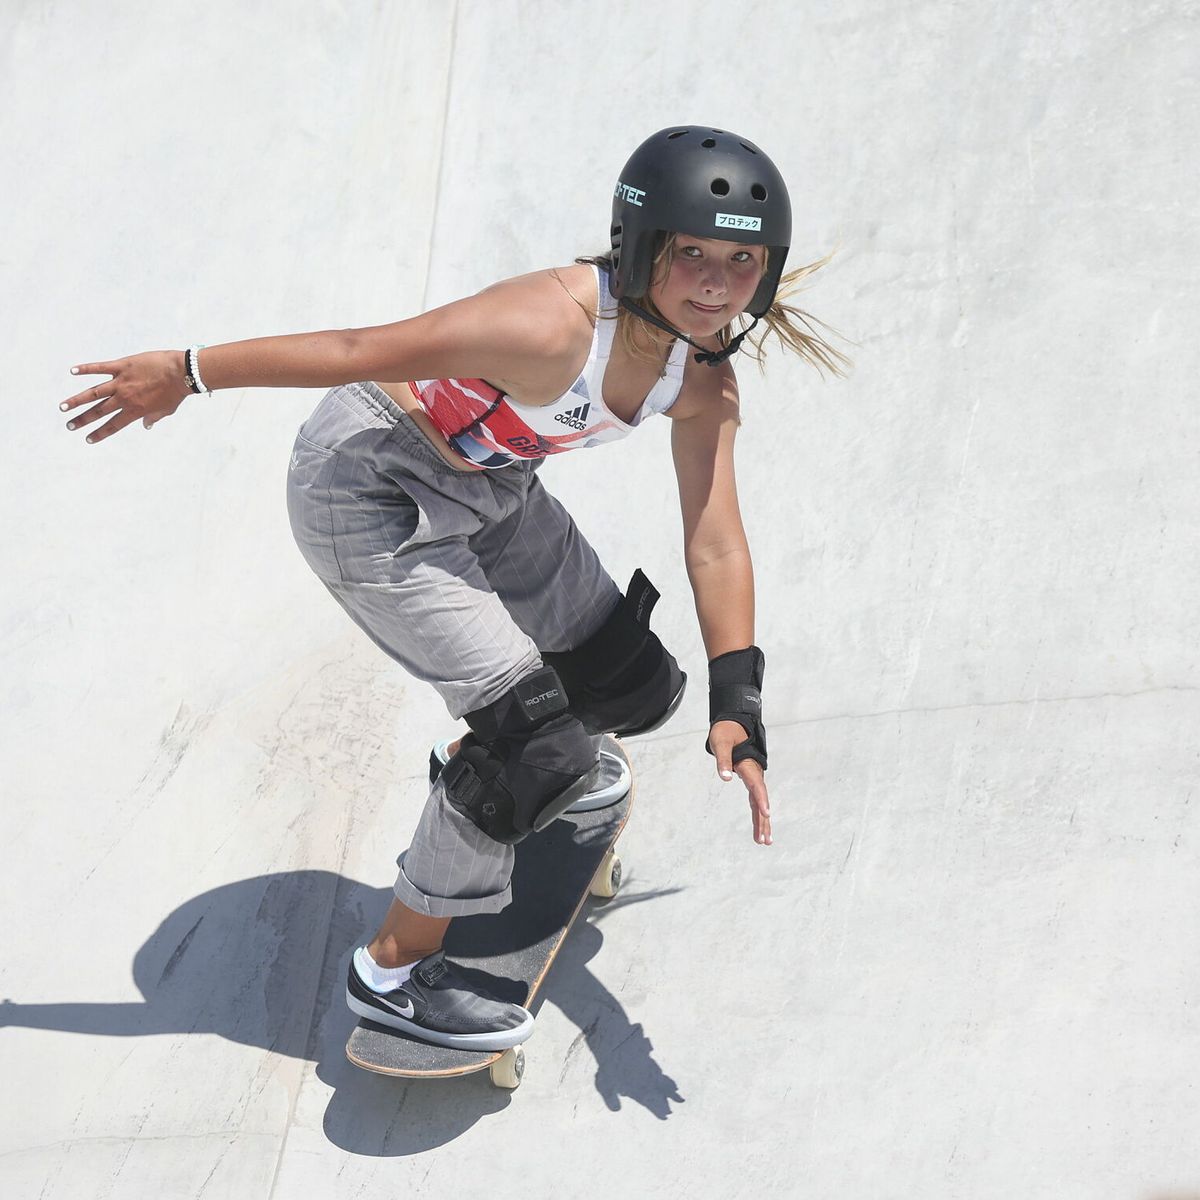 La niña prodigio del 'skateboard': medallista y millonaria con 13 años